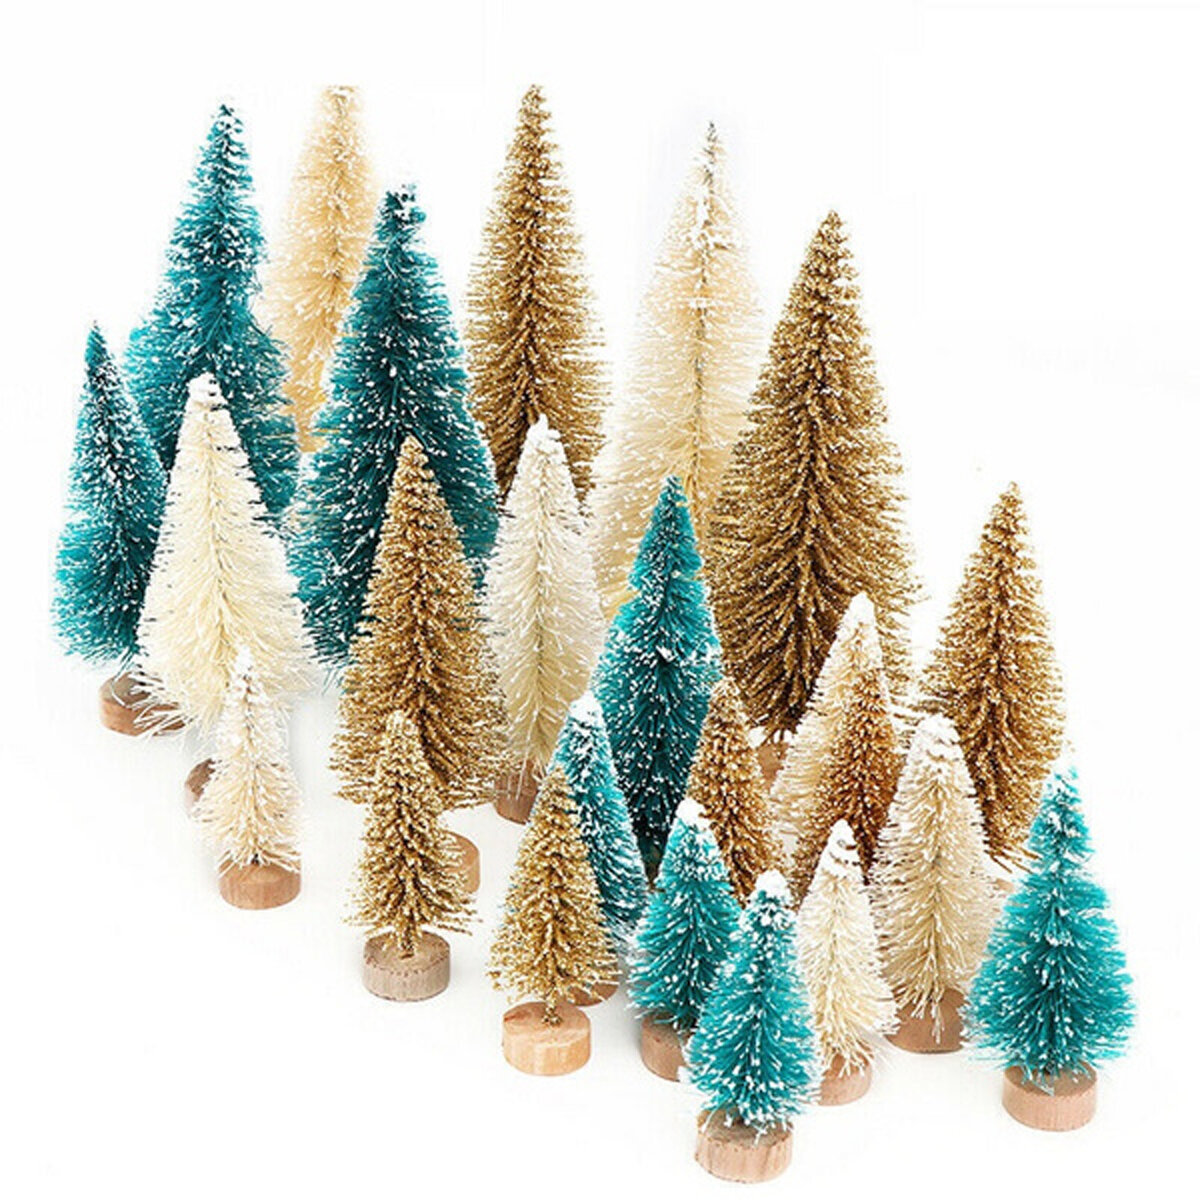 12 stks 4.5 cm Tafelblad Kerst Pijnboom Set Mini Sneeuw Bomen Desktop Kleine Decoratie Vrolijk Kerst